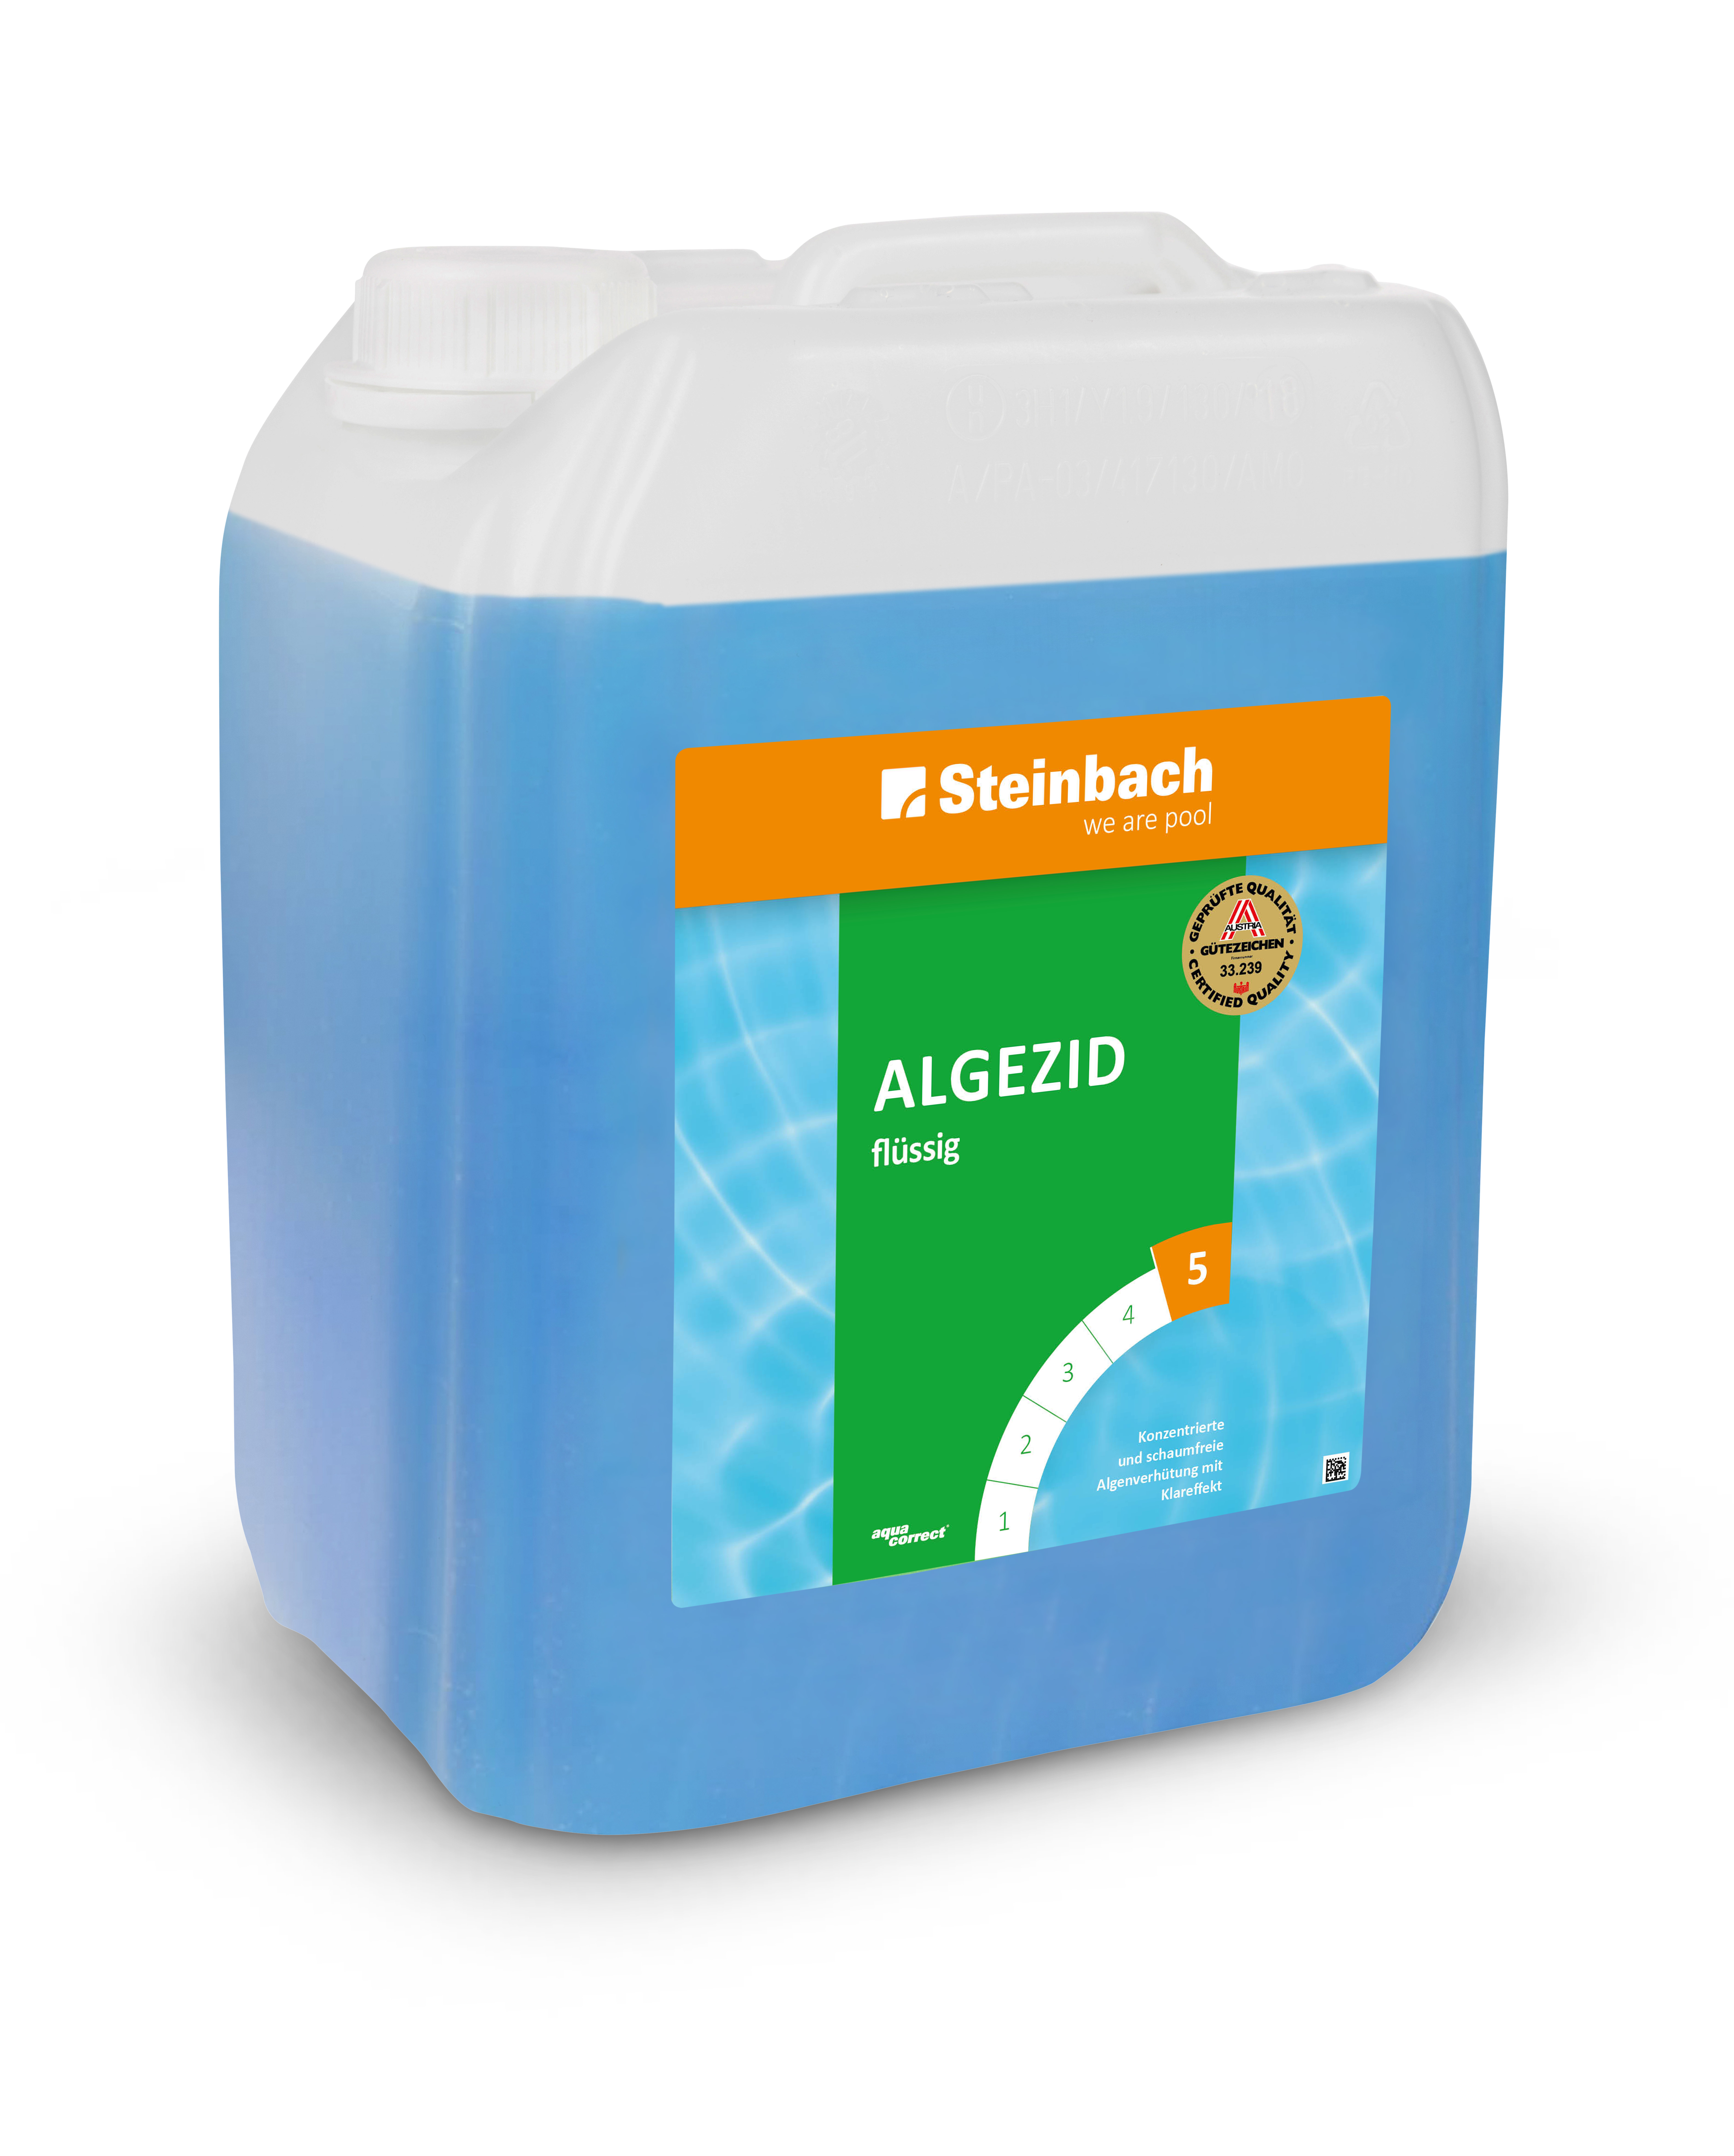 Steinbach Algezid flüssig 9%, 5 l